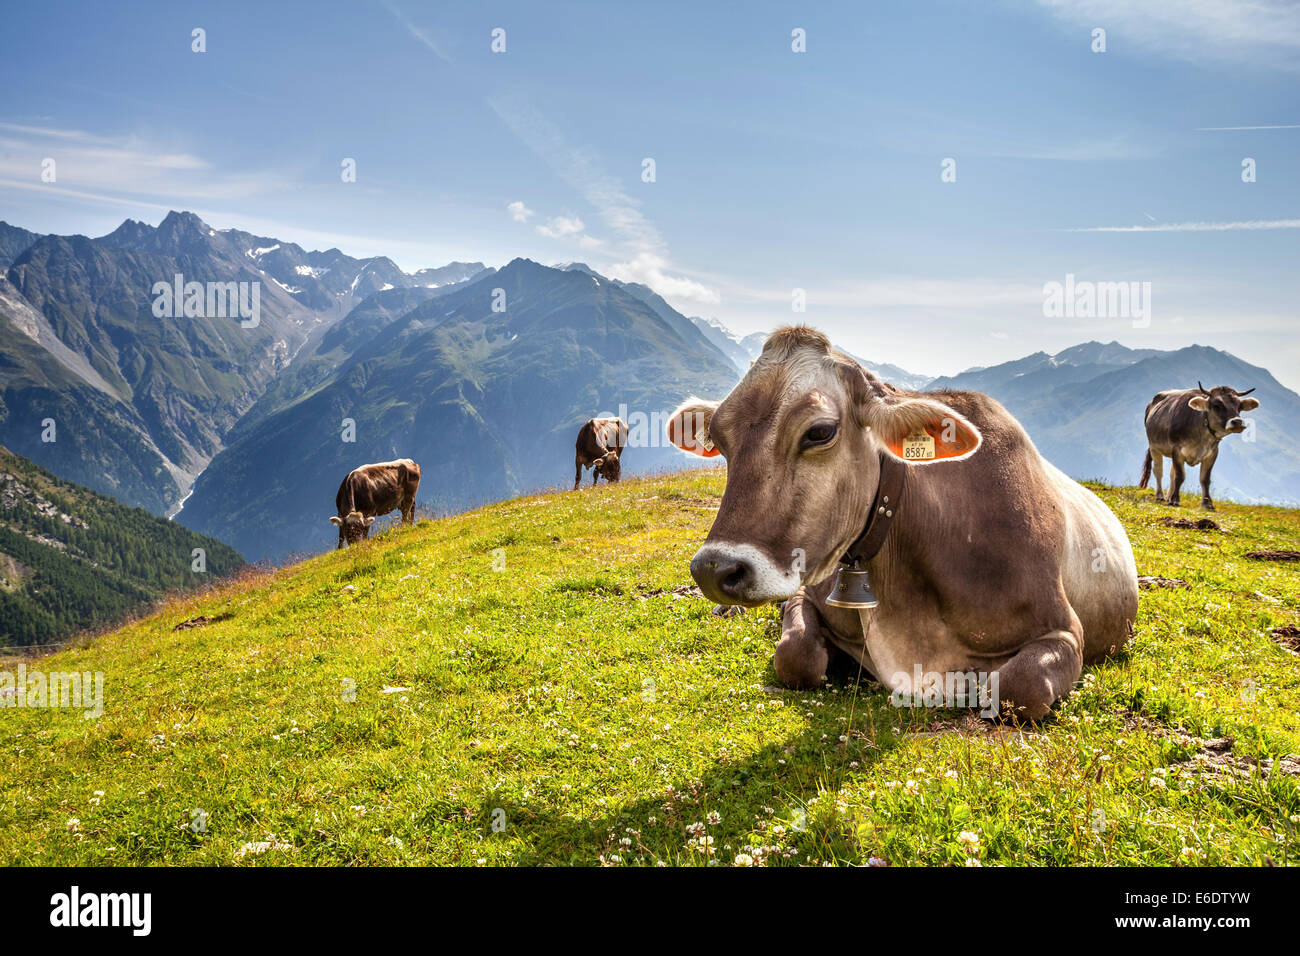 El CAW con una campana en el cuello descansa sobre una pradera en Austria Alpes montaña Foto de stock